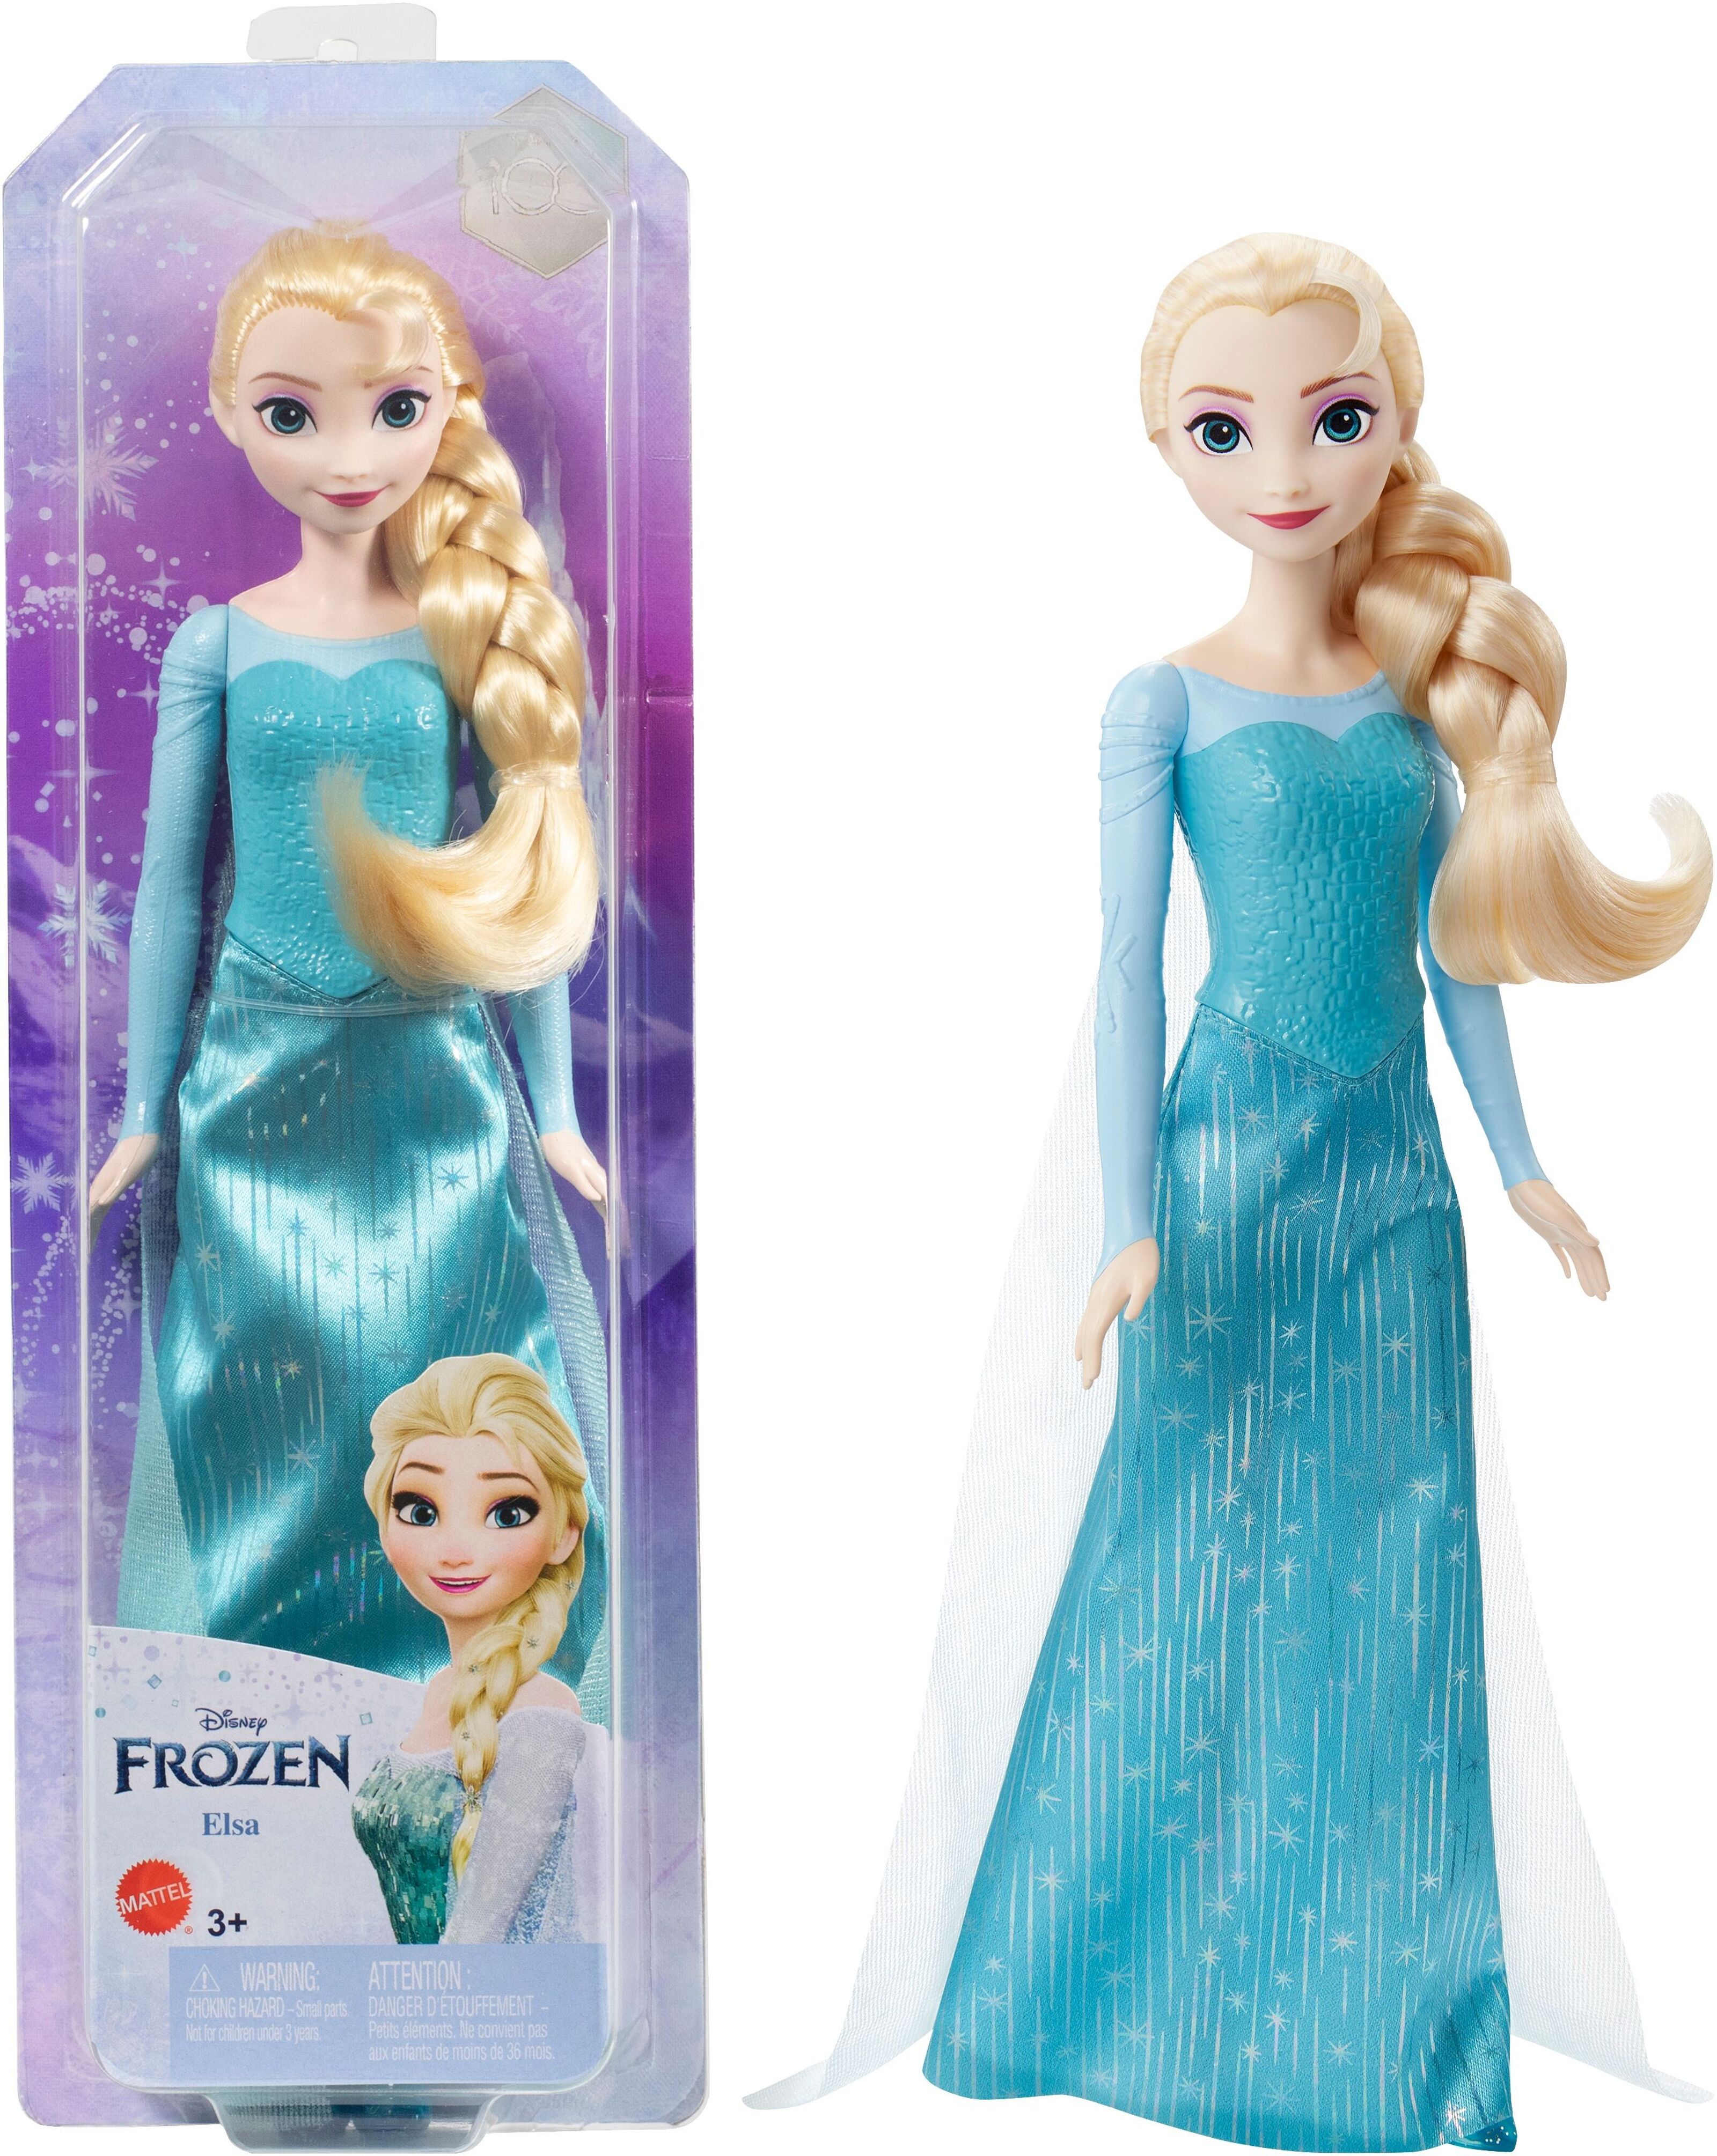 Kaufen Sie Elsa-Puppe zu Großhandelspreisen